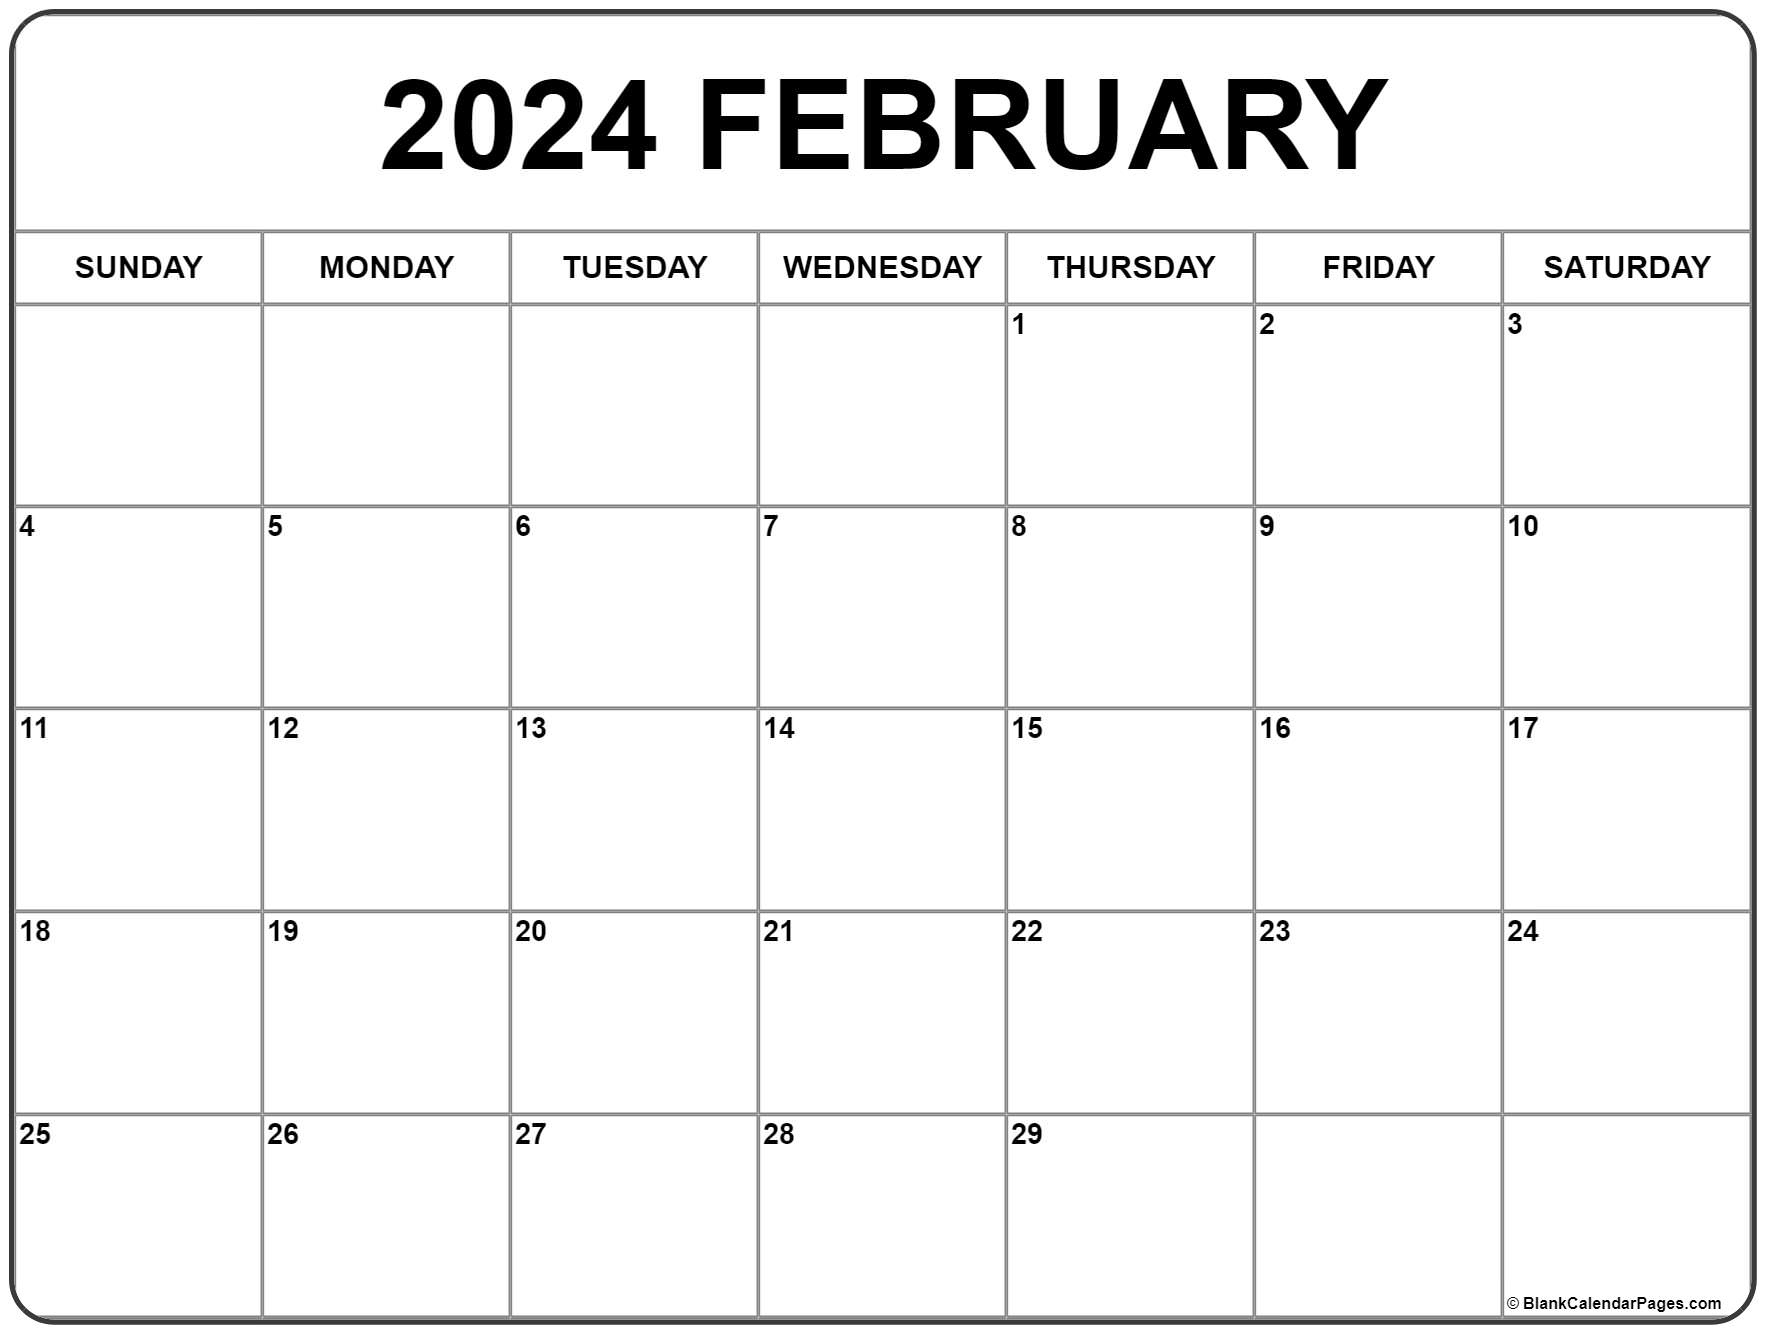 February 2024 Calendar | Free Printable Calendar | Free Printable Calendar 2024 February